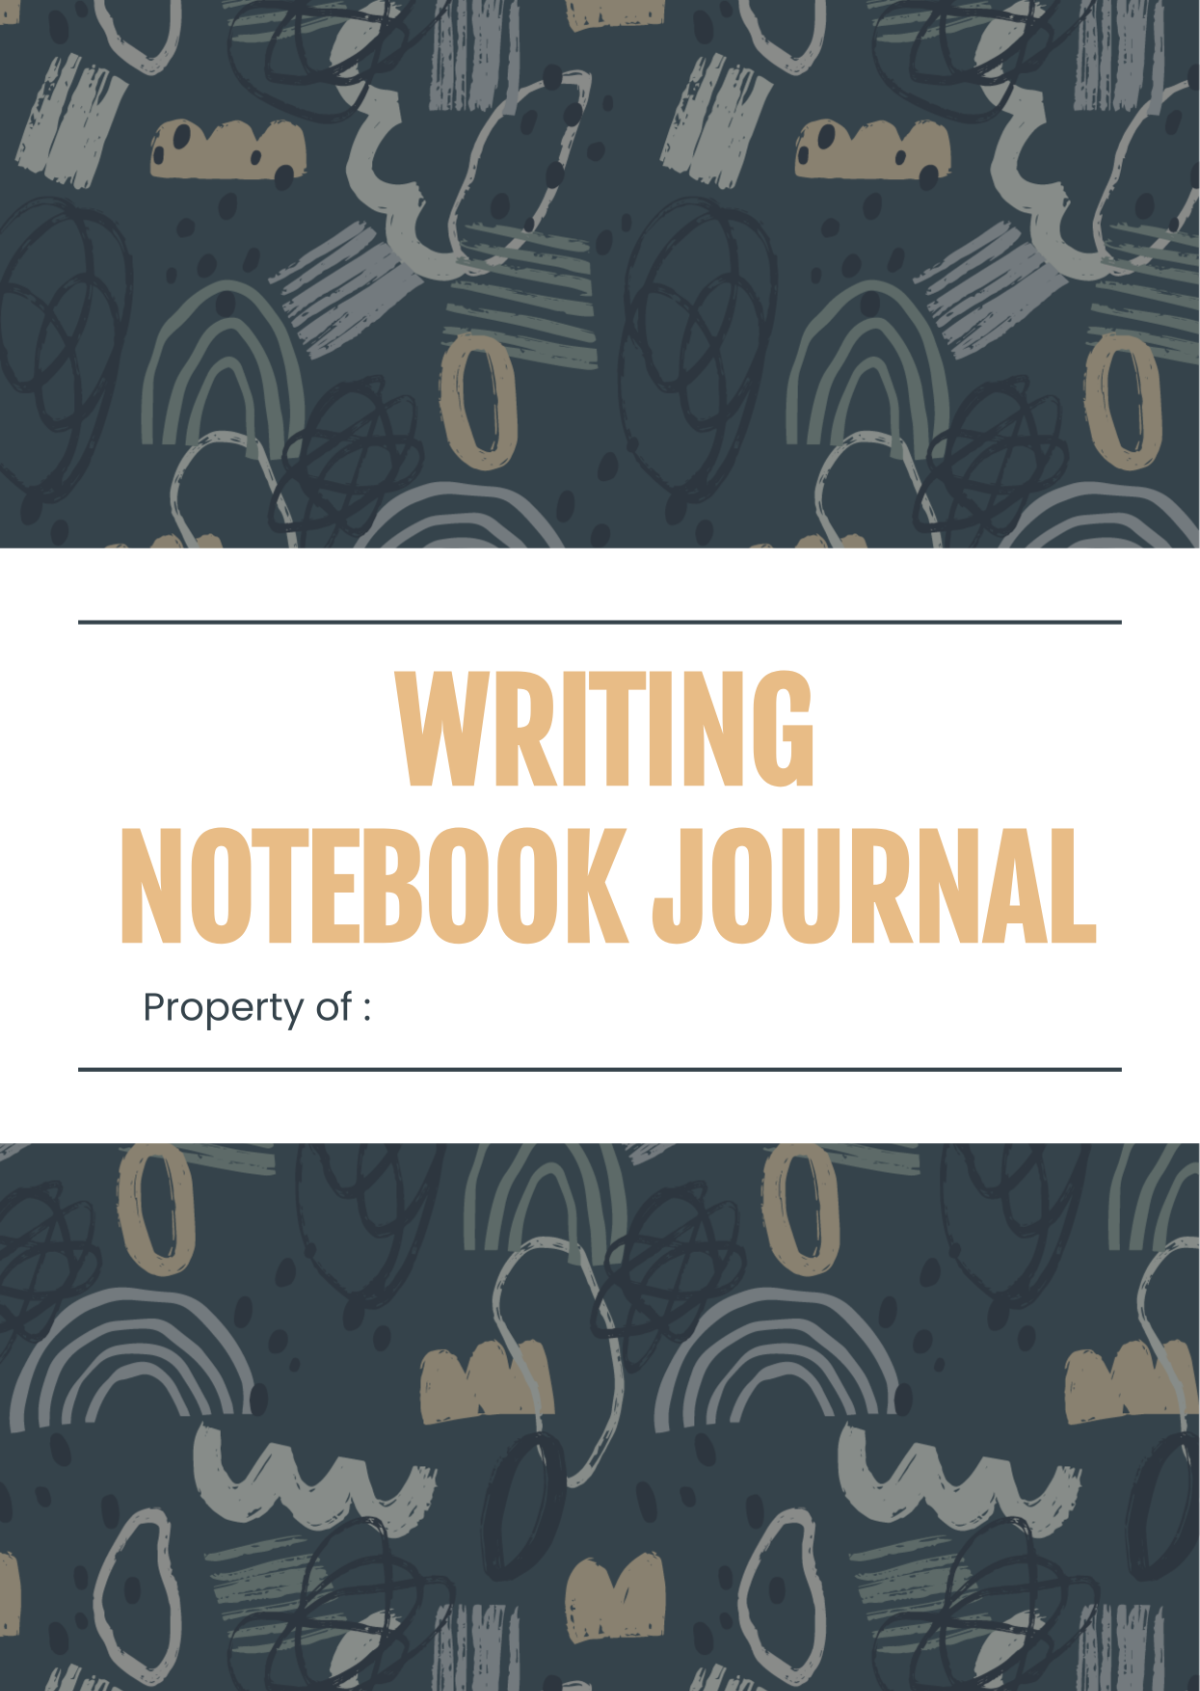 Writing Notebook Journals Template